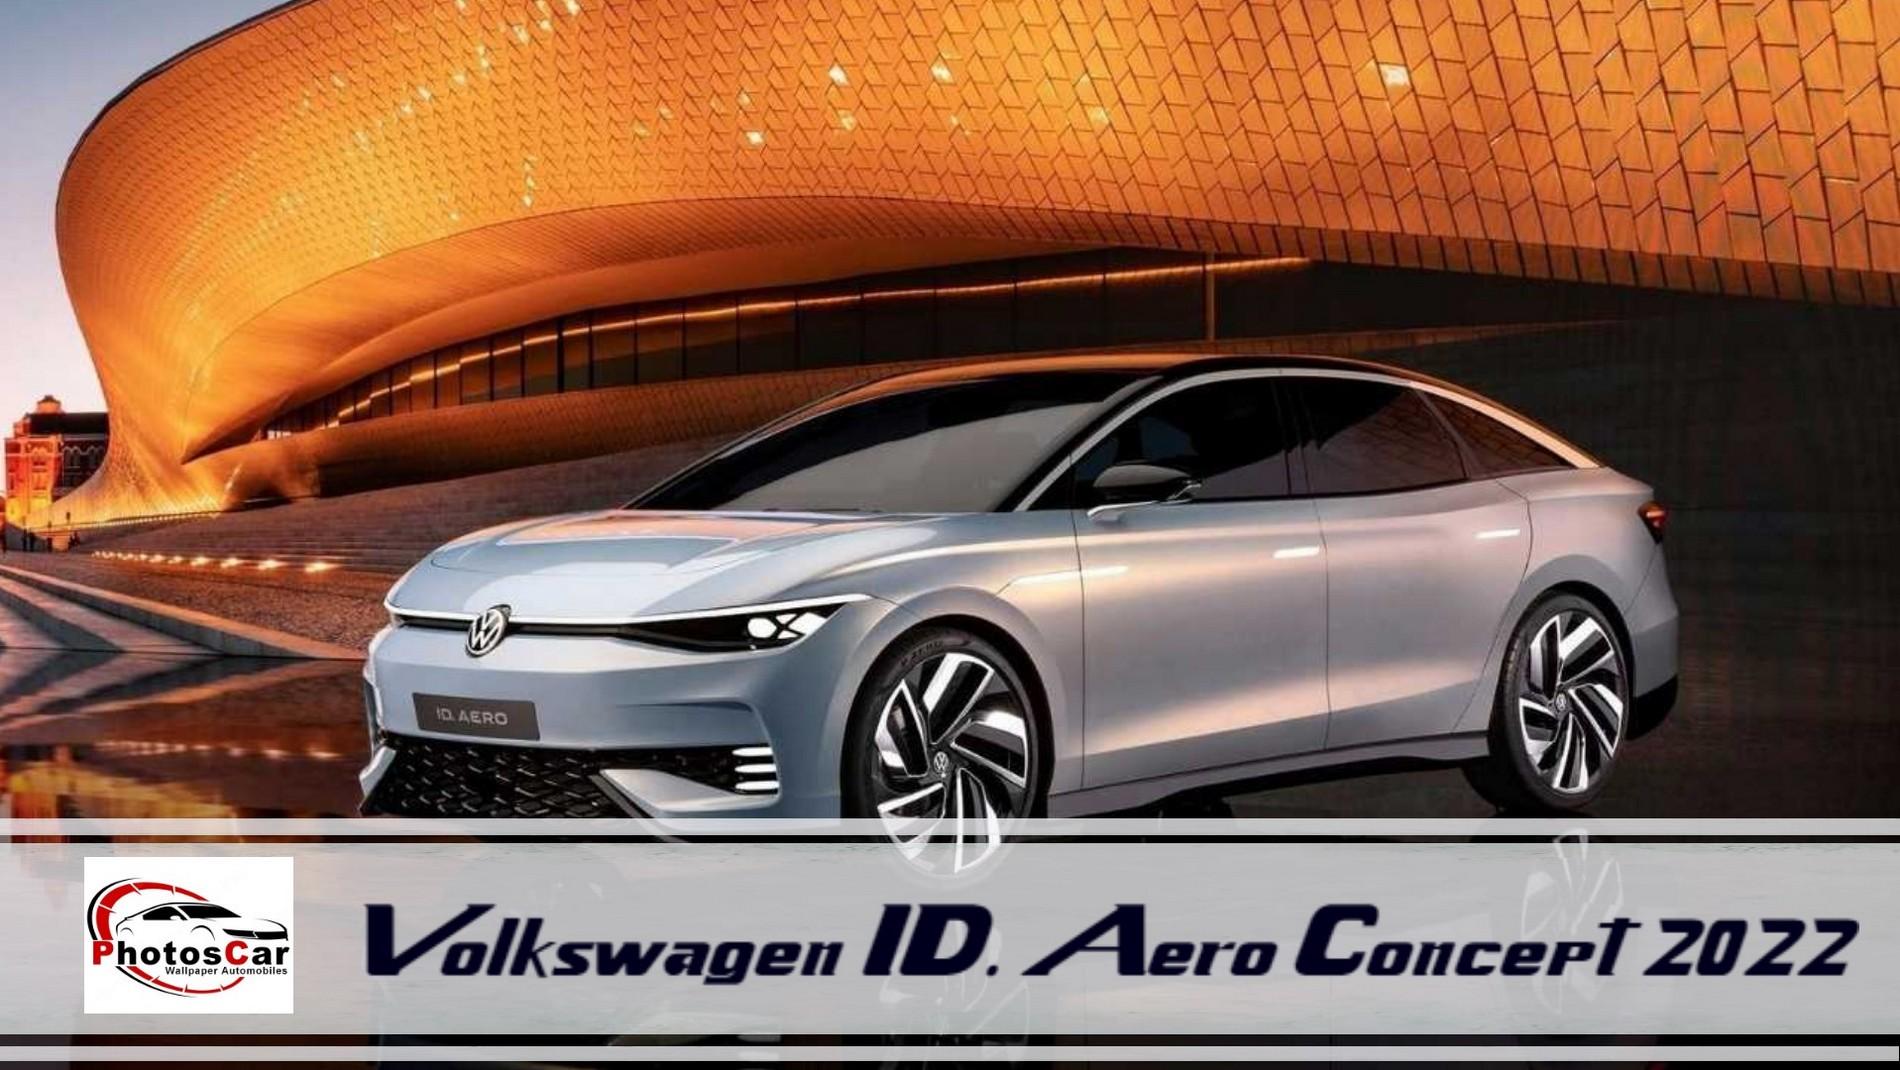 Volkswagen ID. Aero Concept 2022